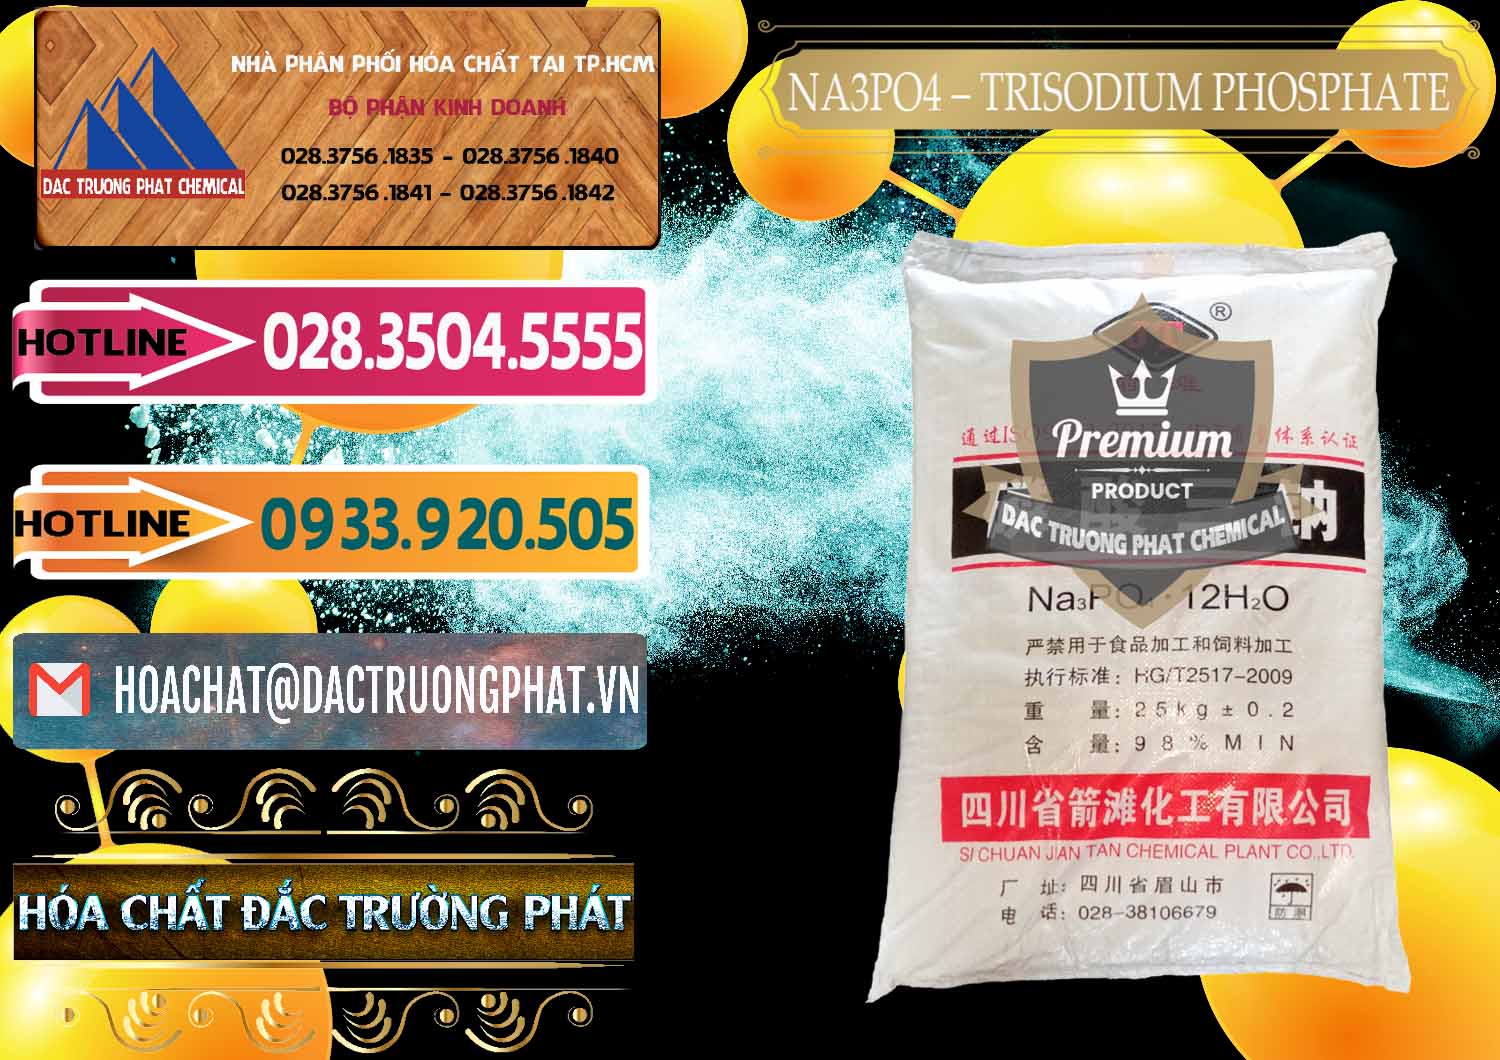 Cty bán ( cung ứng ) Na3PO4 – Trisodium Phosphate Trung Quốc China JT - 0102 - Công ty chuyên bán _ cung cấp hóa chất tại TP.HCM - dactruongphat.vn